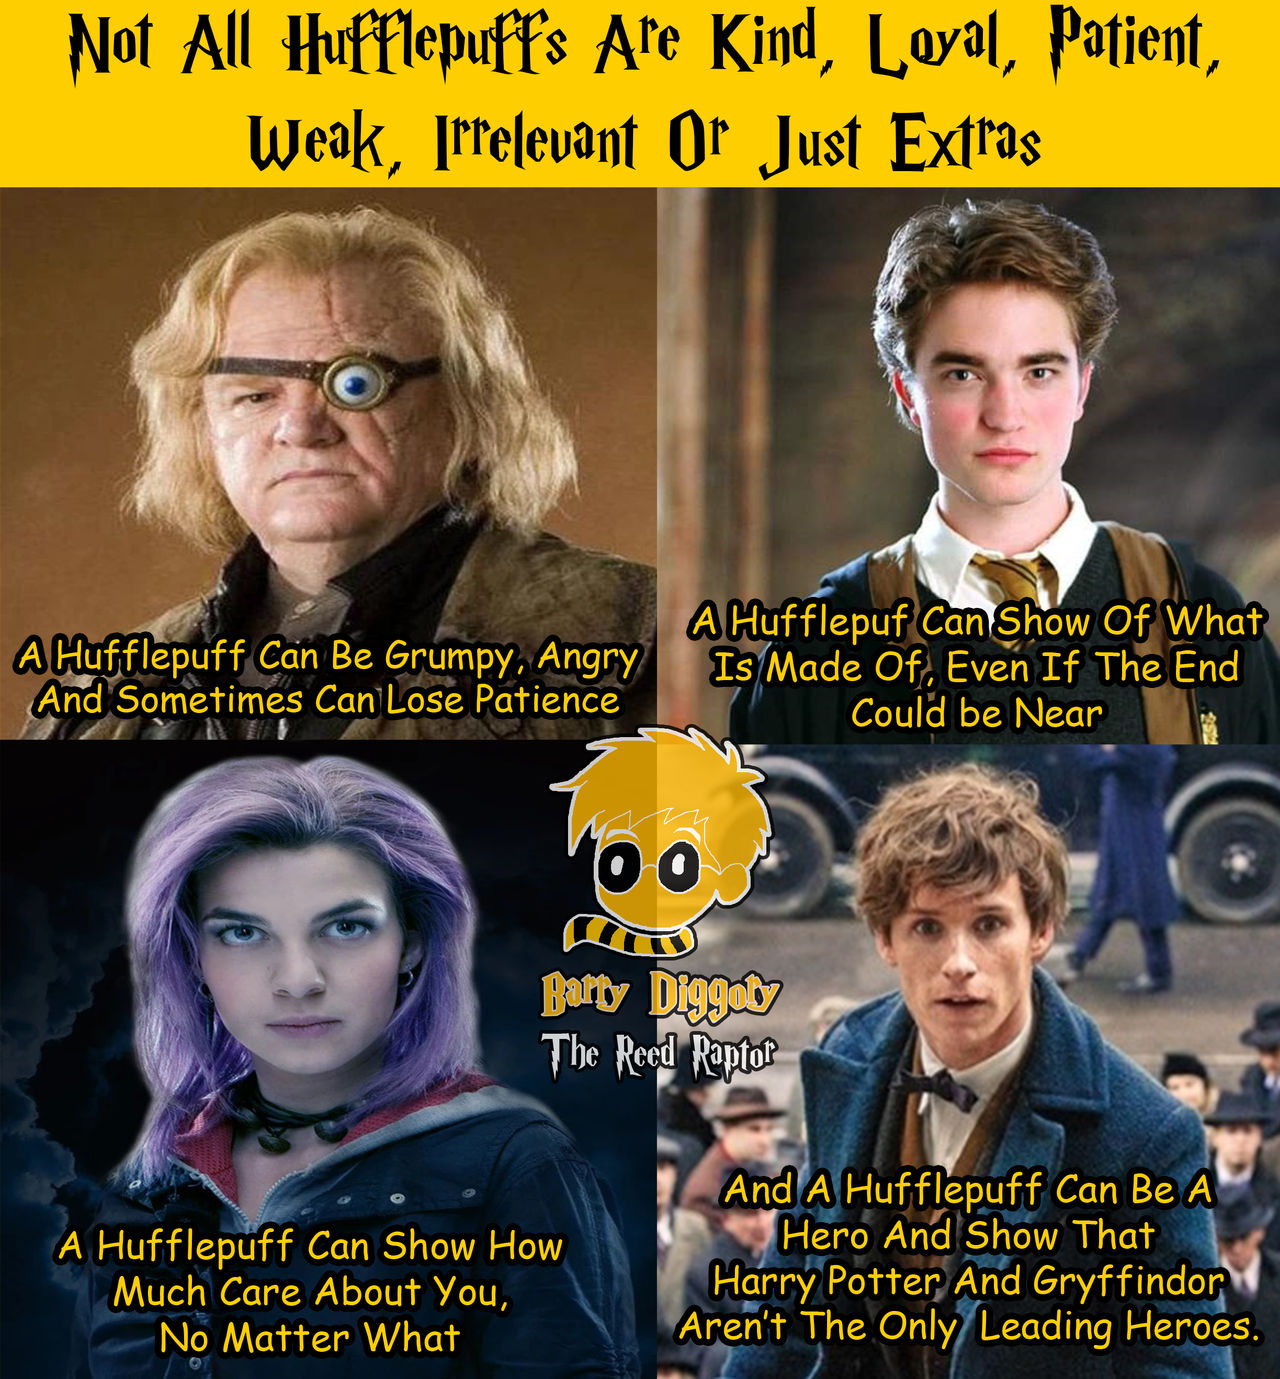 Harry Potter Shipping Meme by disneyfan108 on DeviantArt